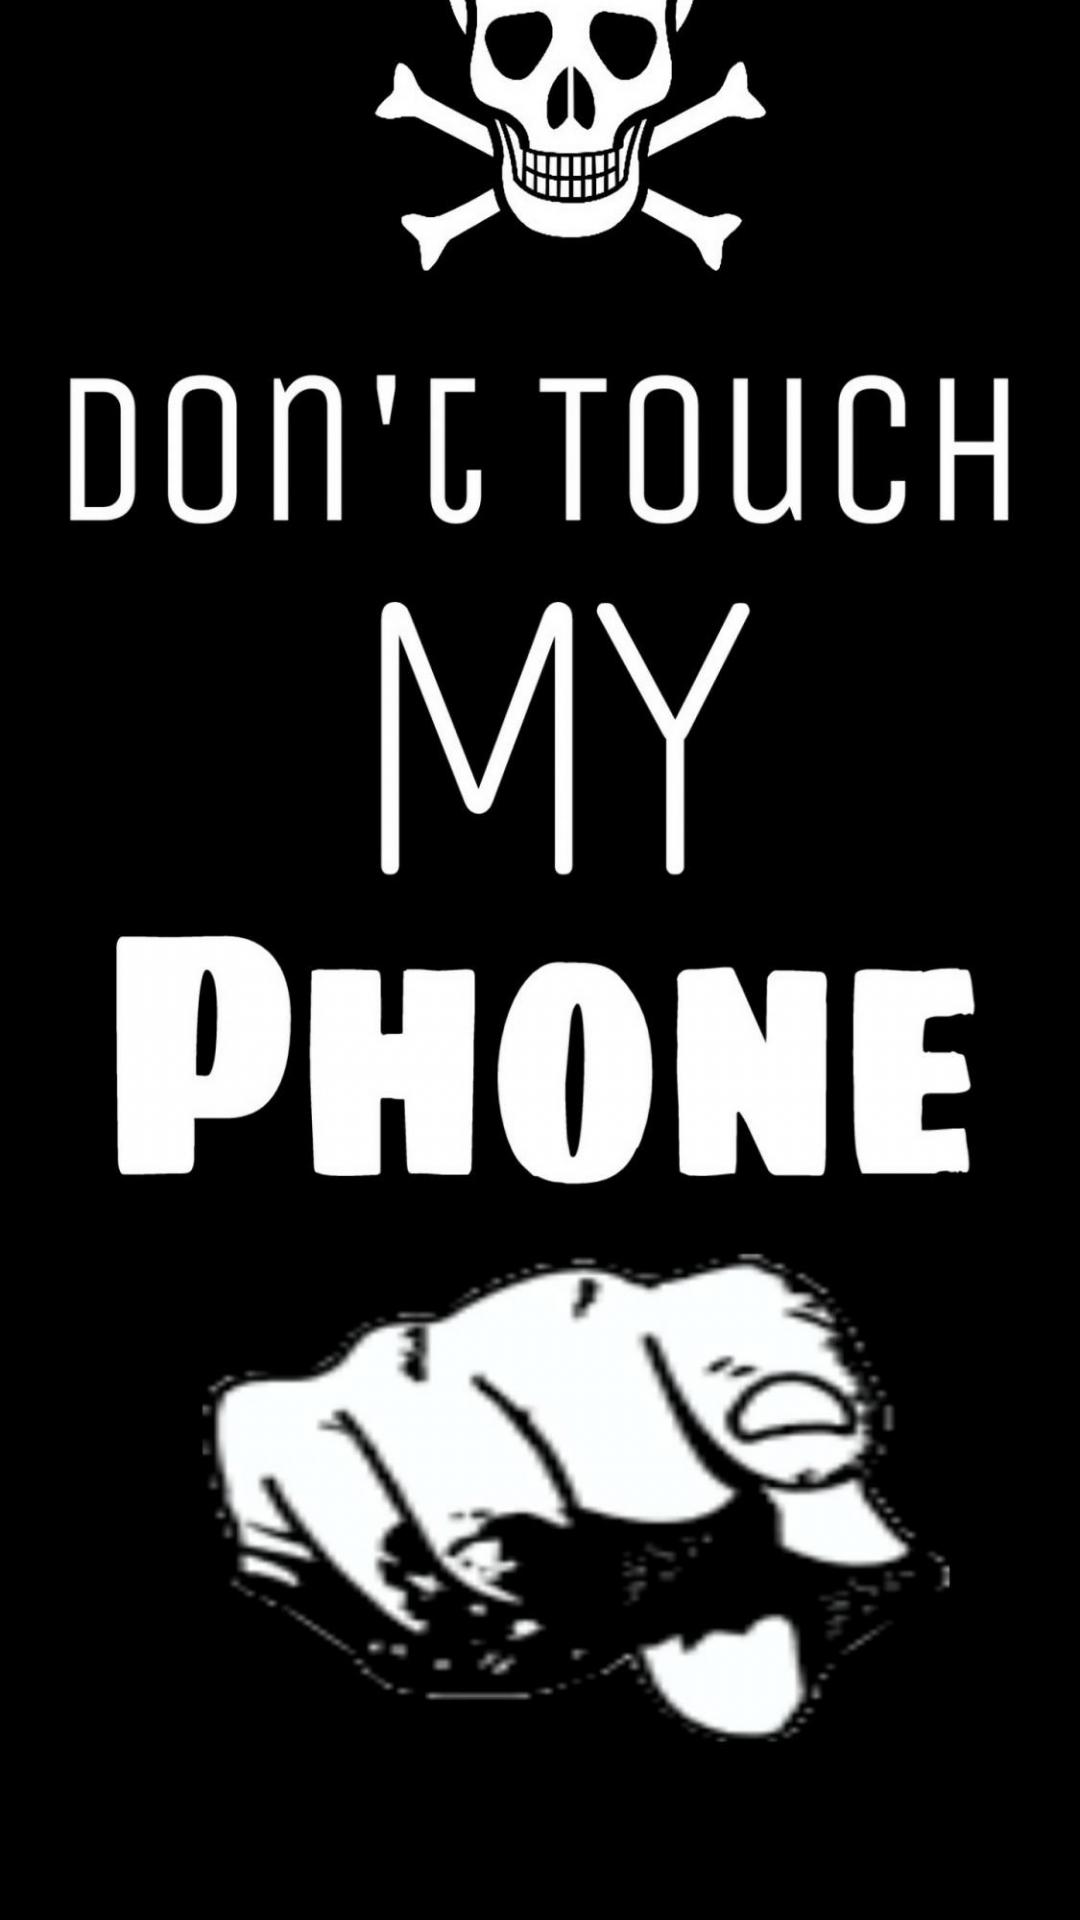 Не трогай мой телефон фото на аву